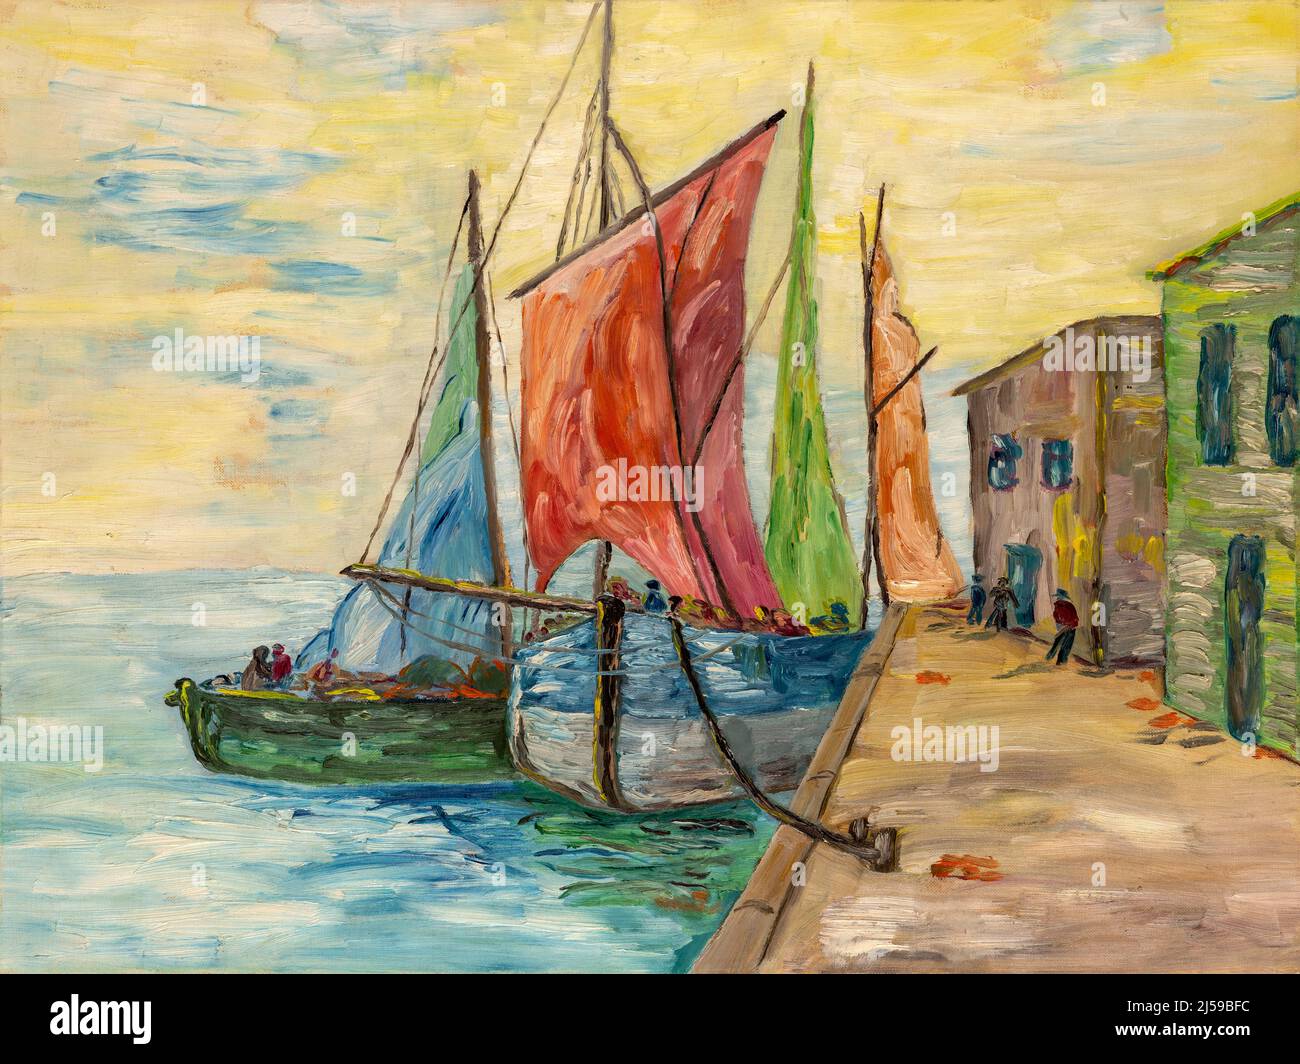 Peinture à l'huile avec des coups de pinceau épais représentant des bateaux de pêche et des cabanes dans un port. Art impressionnisme Banque D'Images